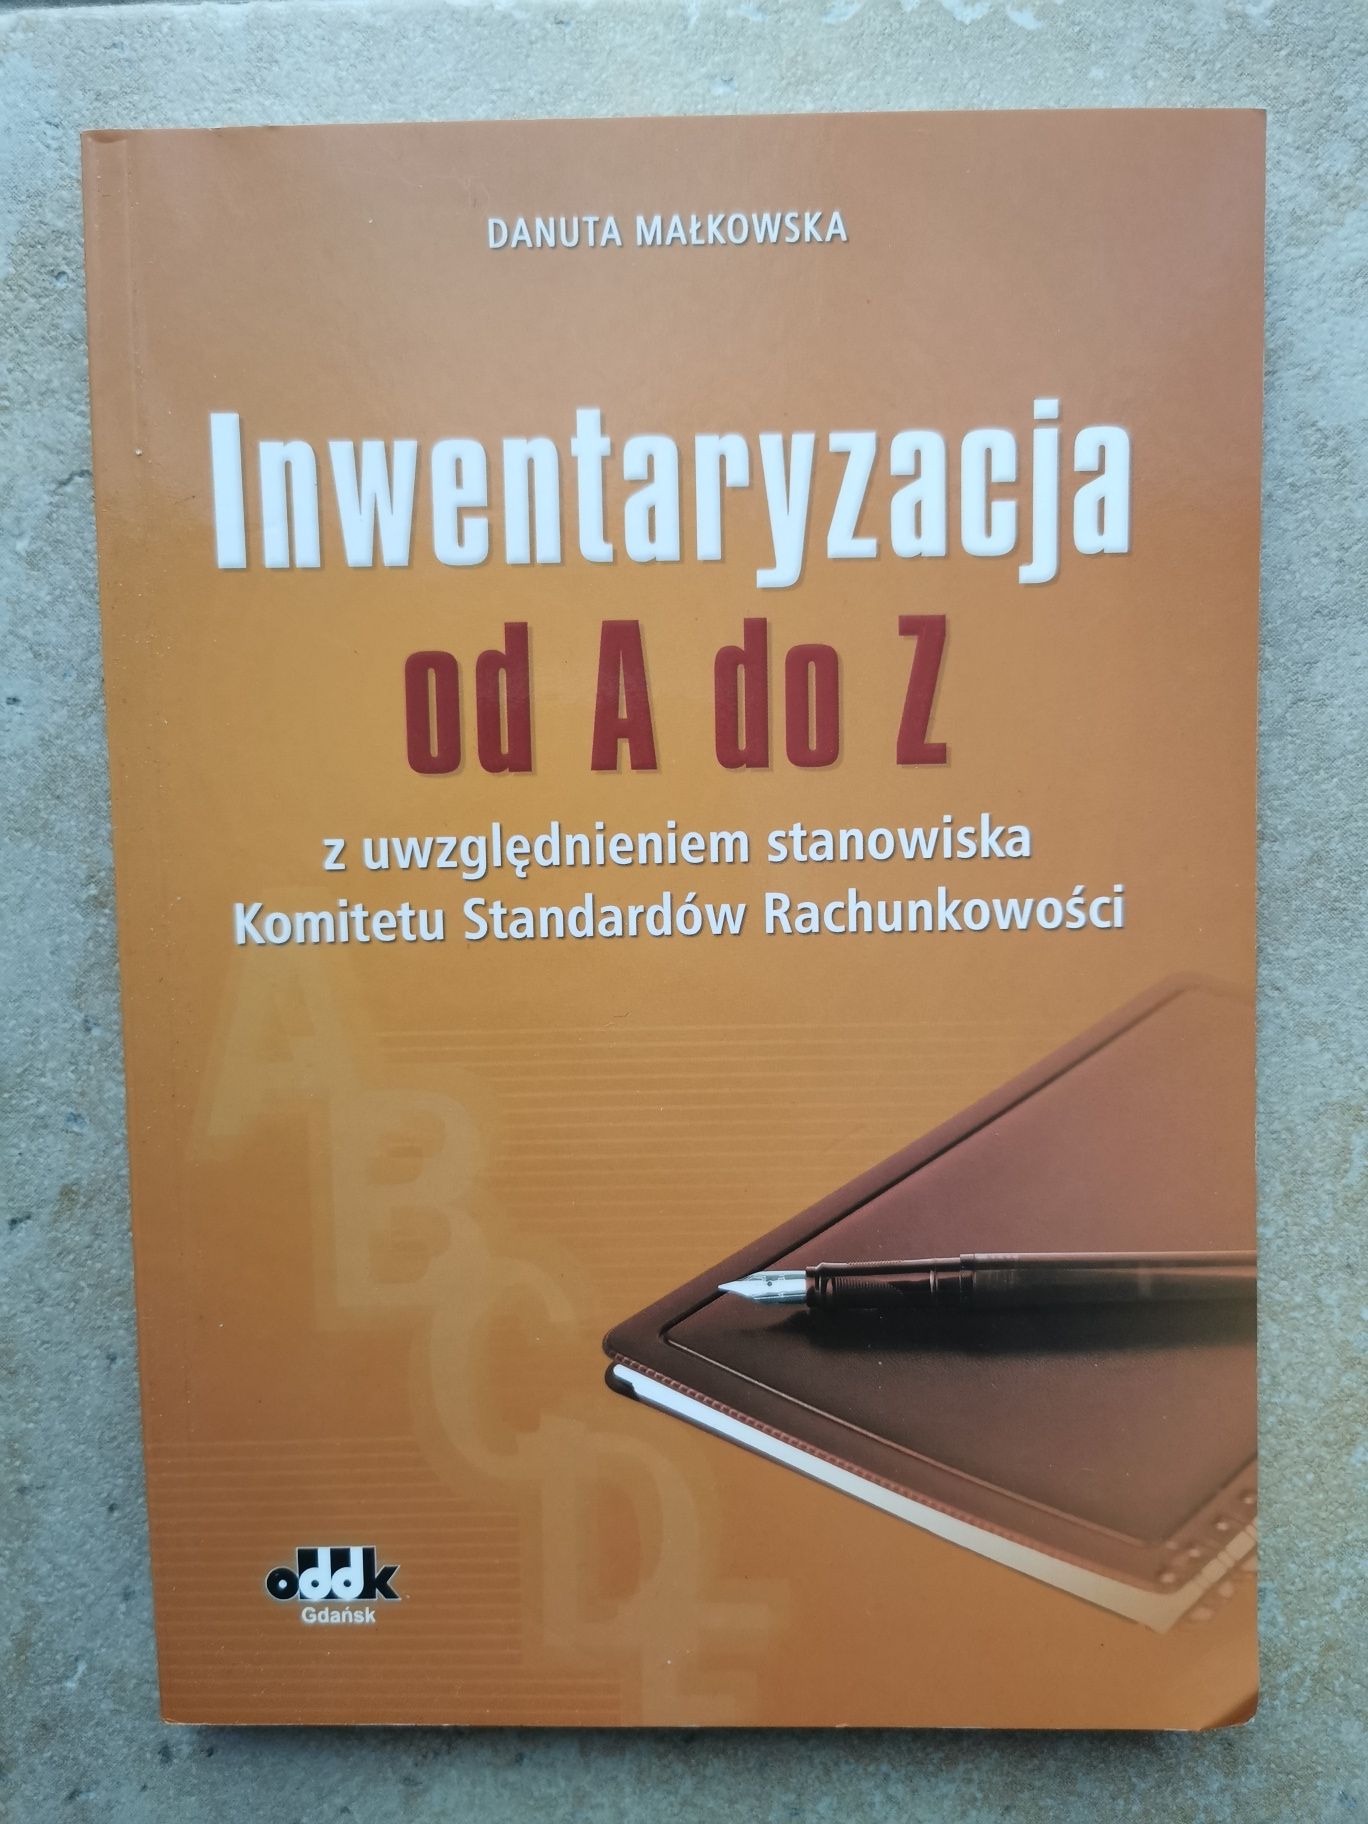 Inwentaryzacja od A do Z Danuta Makowska ODDK Gdańsk 2017